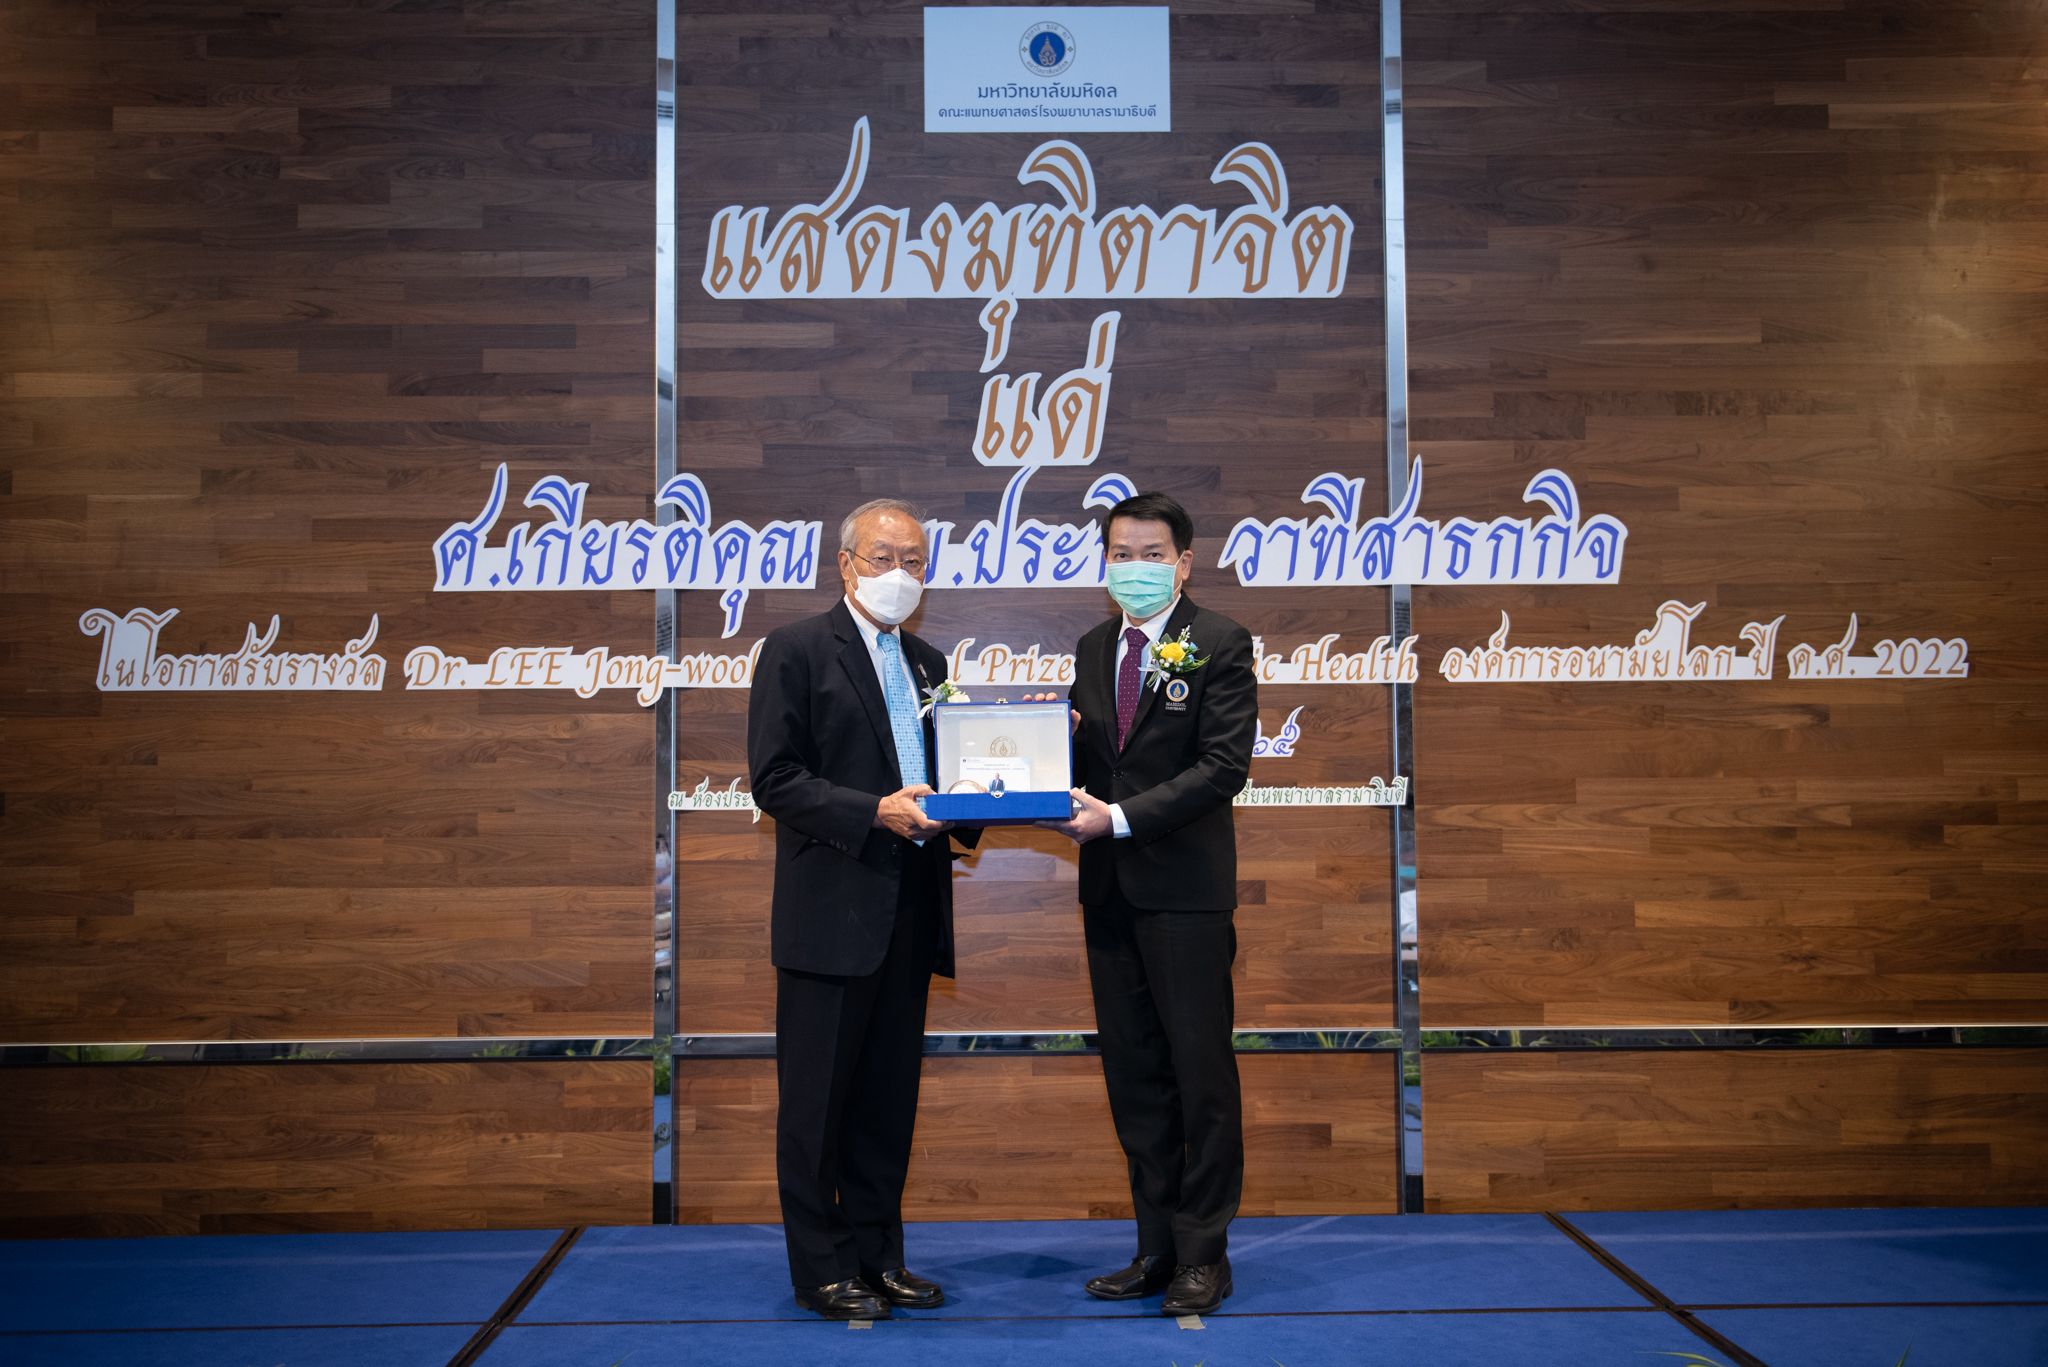 มุฑตาจิต ศ.เกียรติคุณ นพ.ประกิต วาทีสาธกกิจ ในโอกาสได้รับรางวัล Dr.LEE Jong-wook Memorial Prize for Public Health องค์การอนามัยโลก ปี ค.ศ. 2022